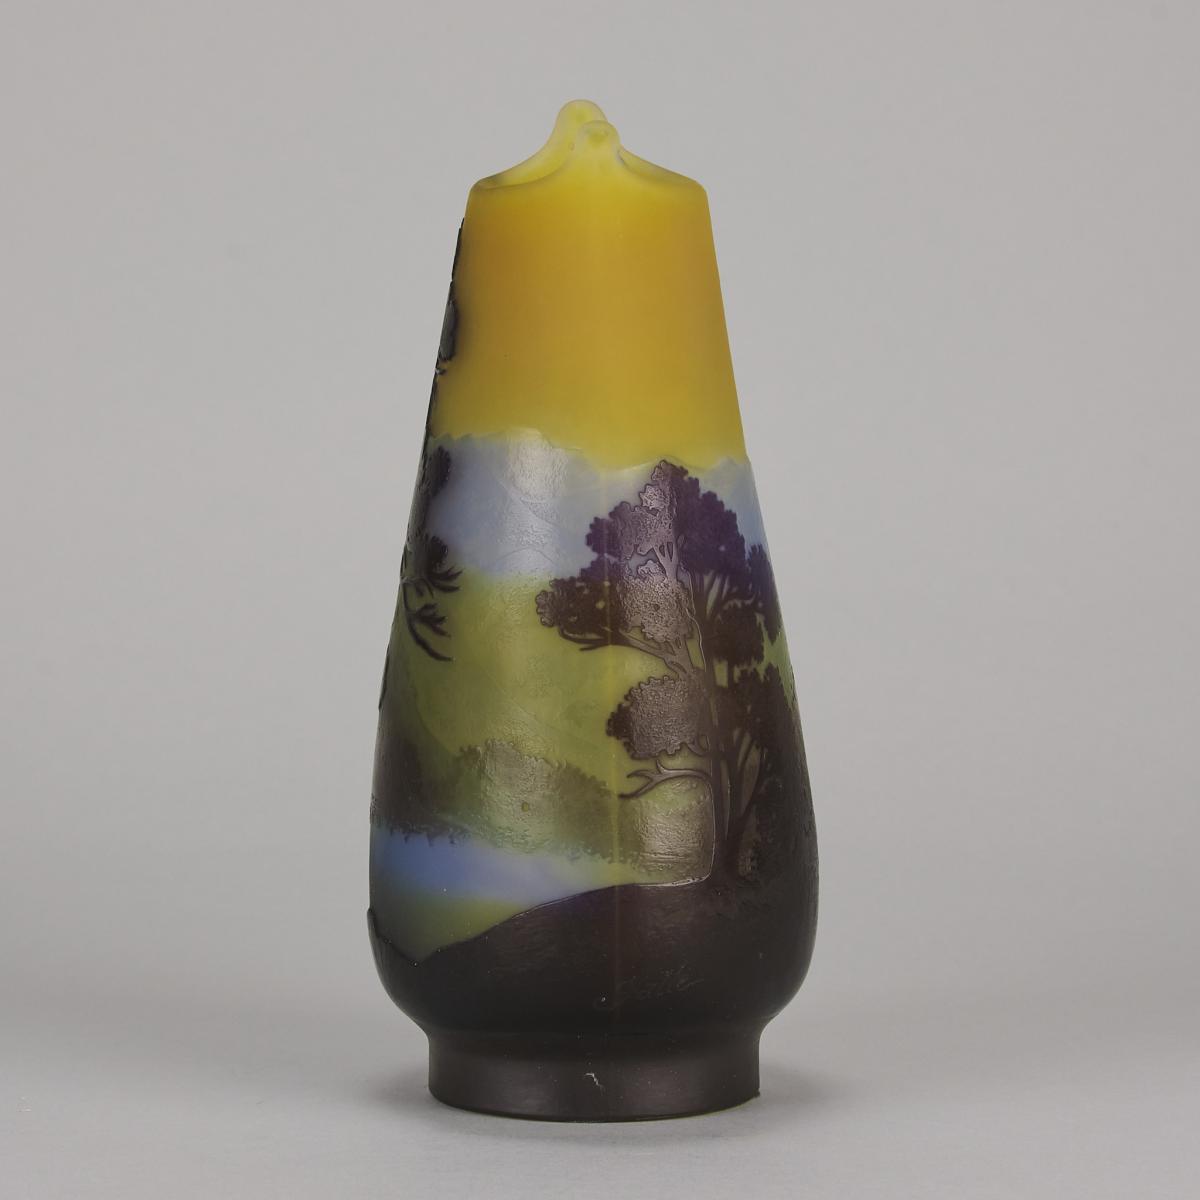 Early 20th Century Art Nouveau Glass Vase "Landscape Vase" by Emile Gallé